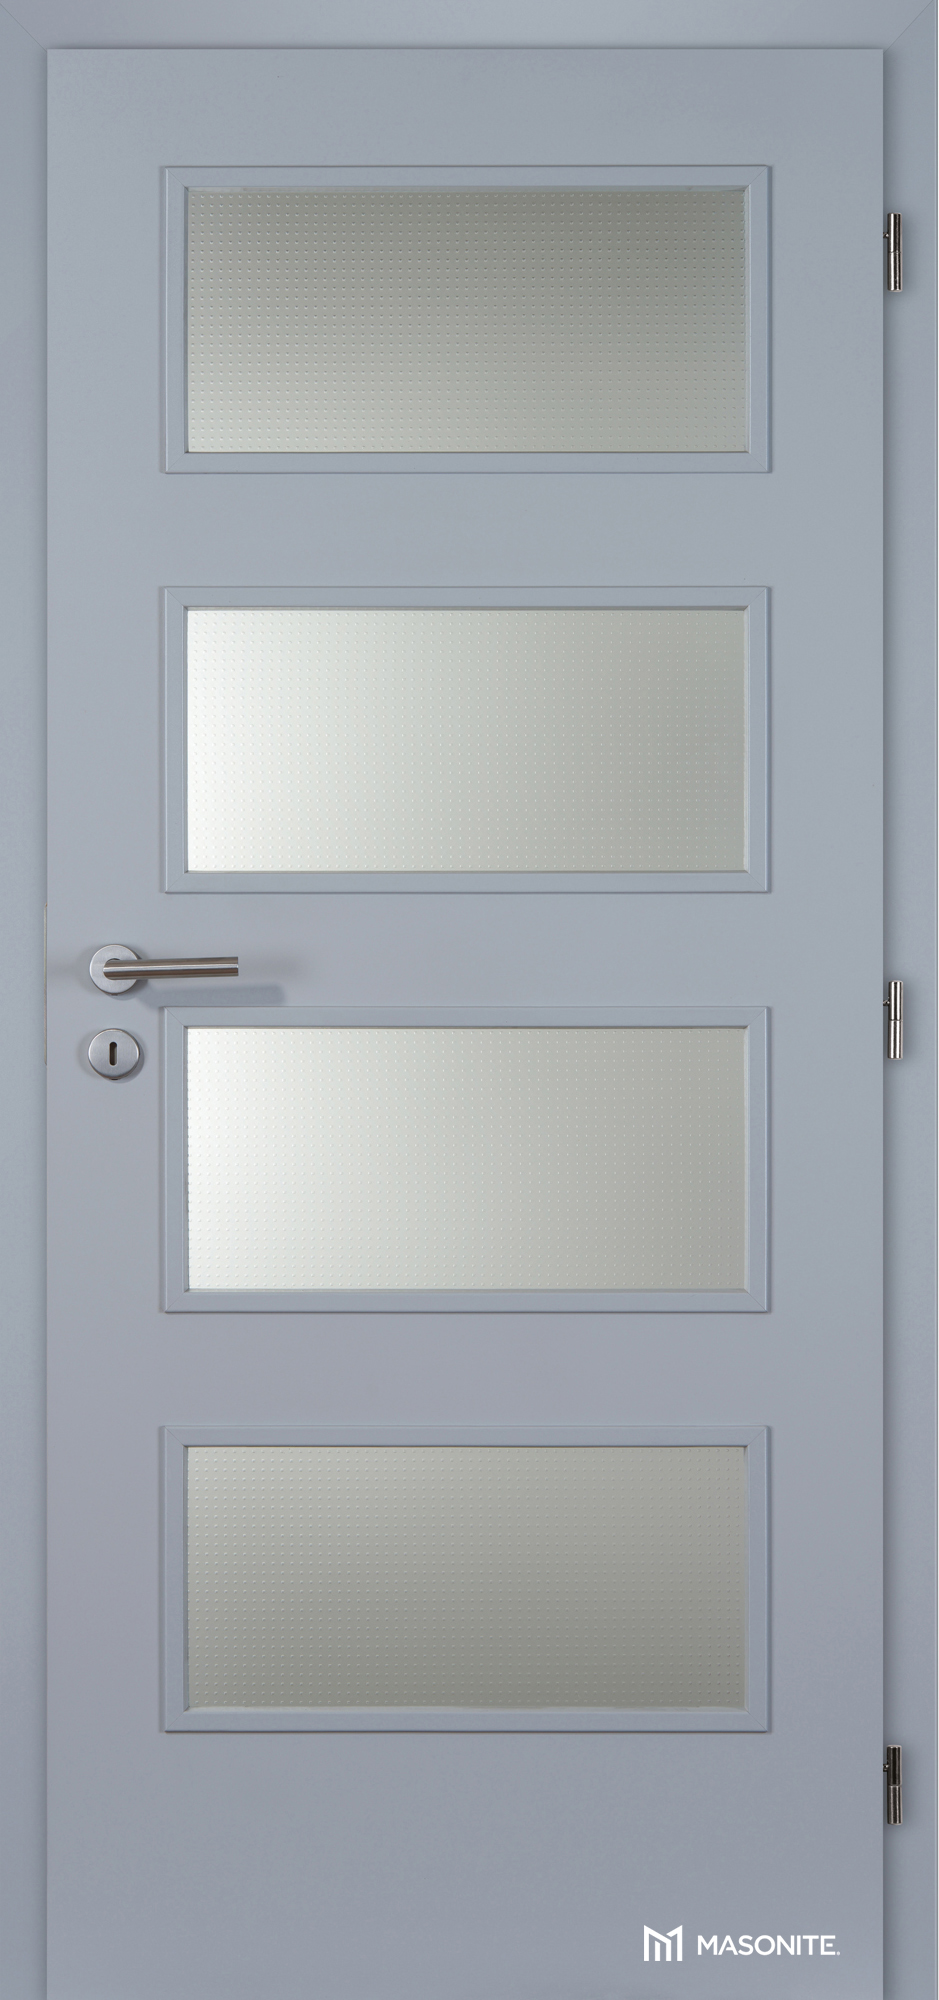 Dveře DTD DOMINANT 4x piskované sklo CPL šedá